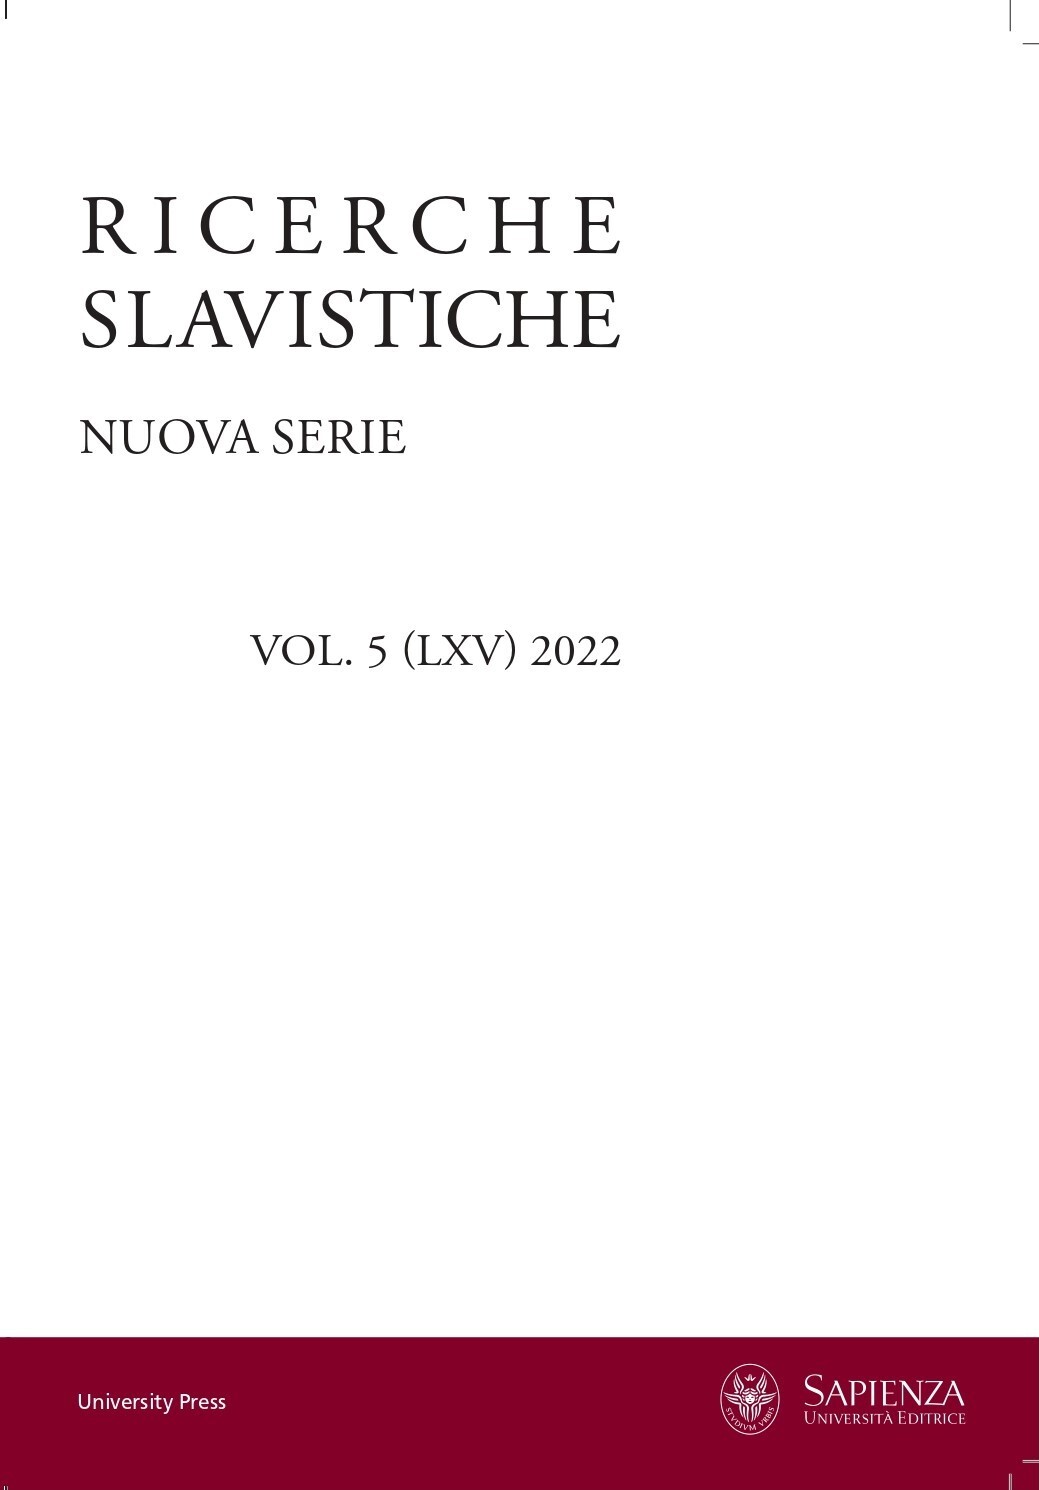 La slovenistica in settant'anni di "Ricerche slavistiche"